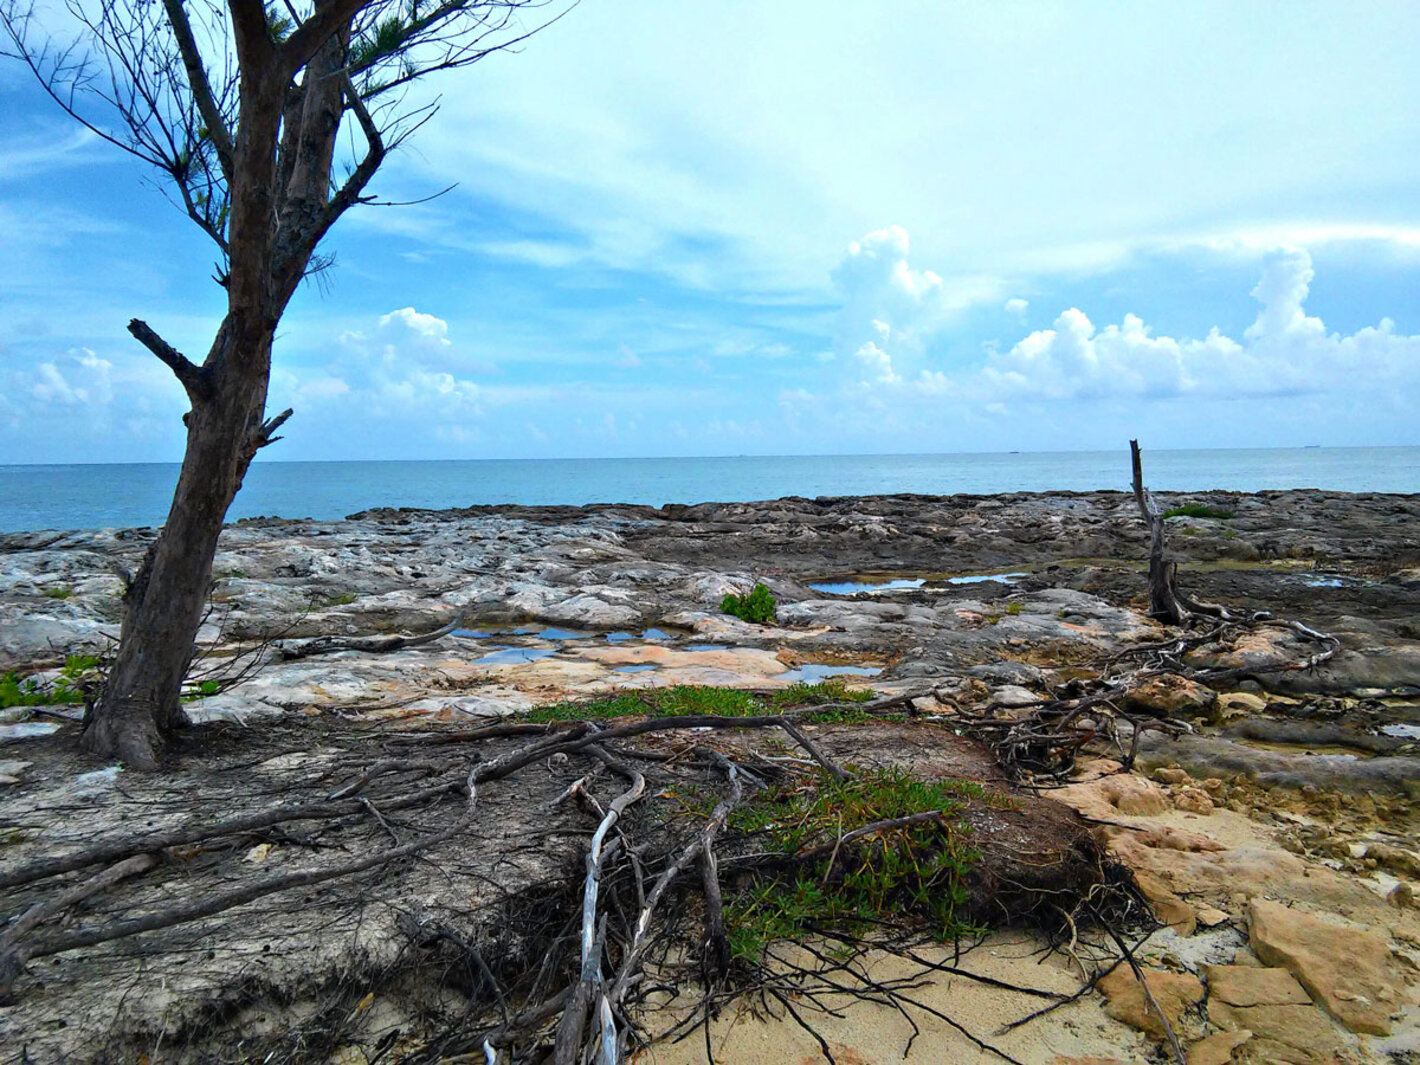 Centroamérica y el Caribe piden apoyo internacional para abordar el cambio climático